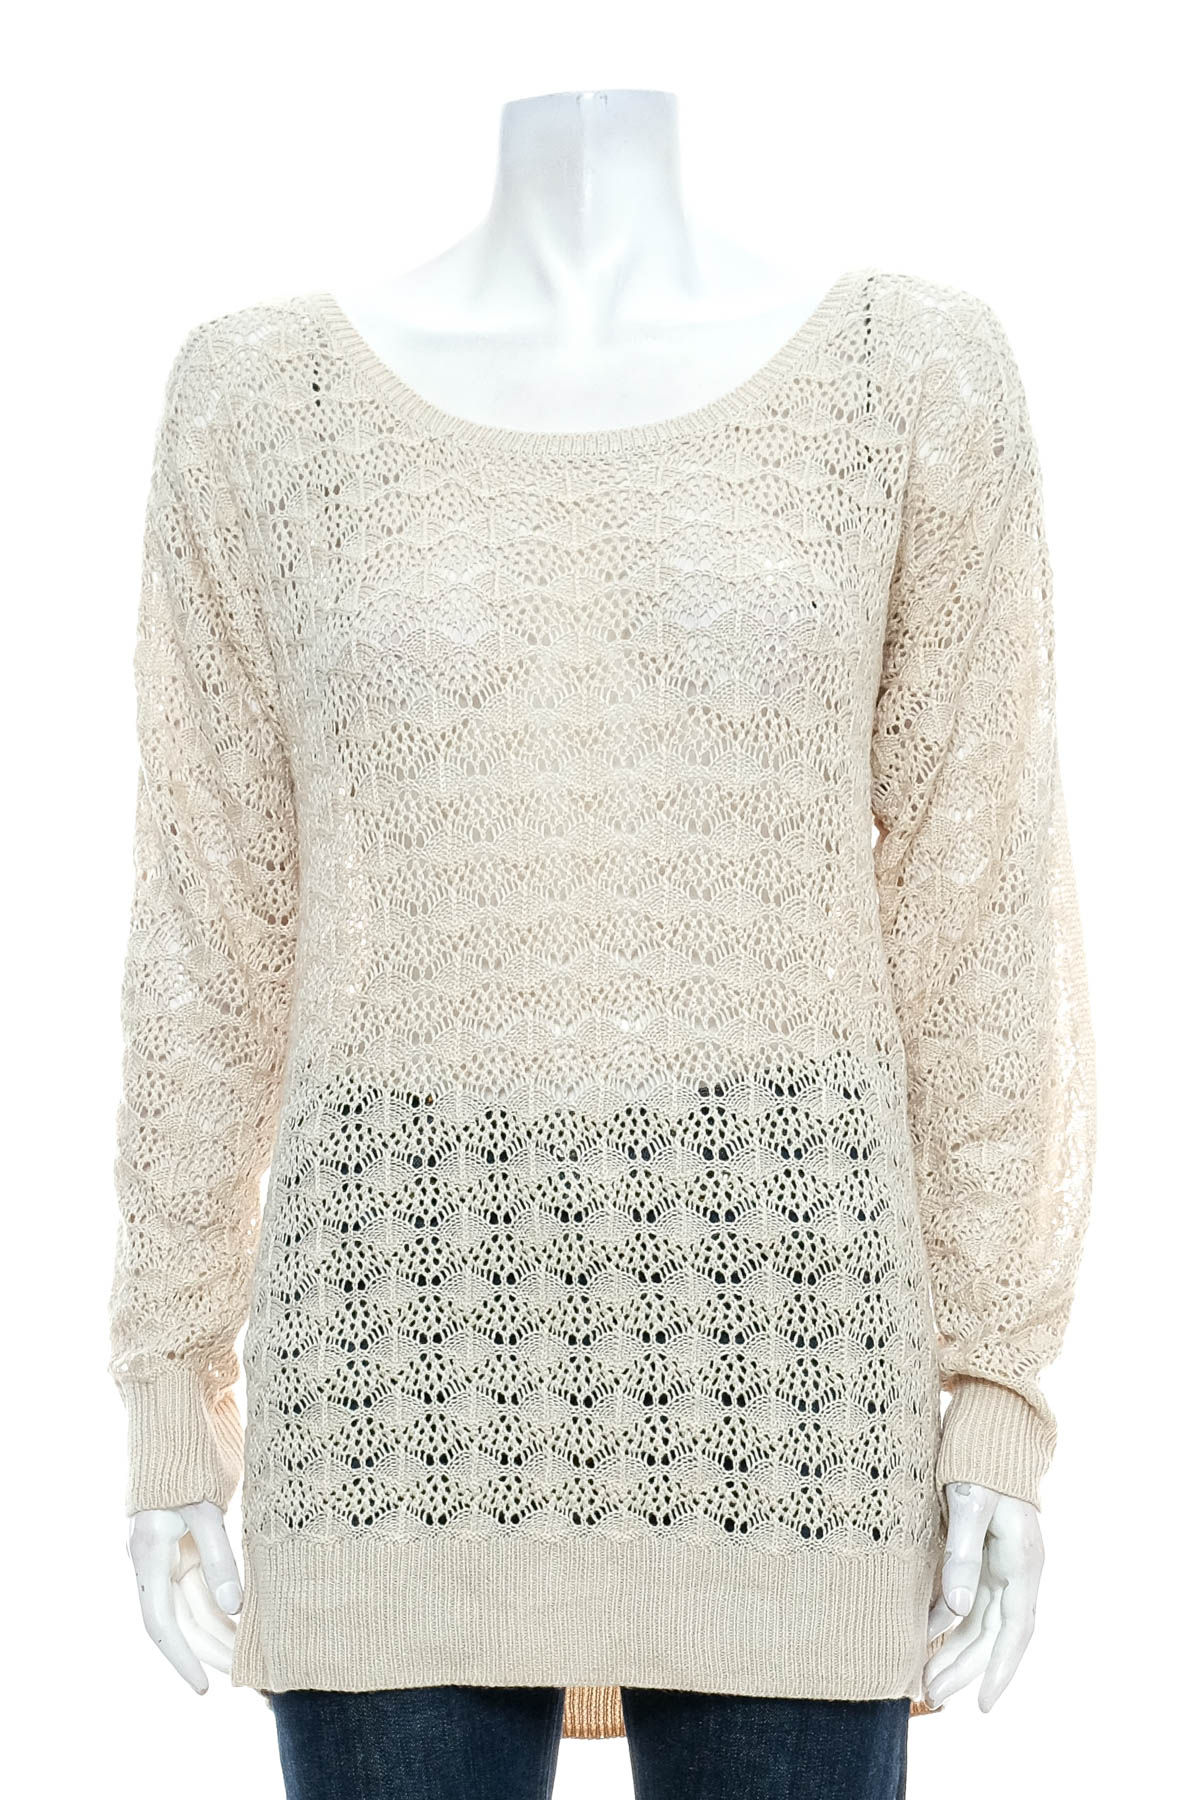 Women's sweater - SOHO - 0